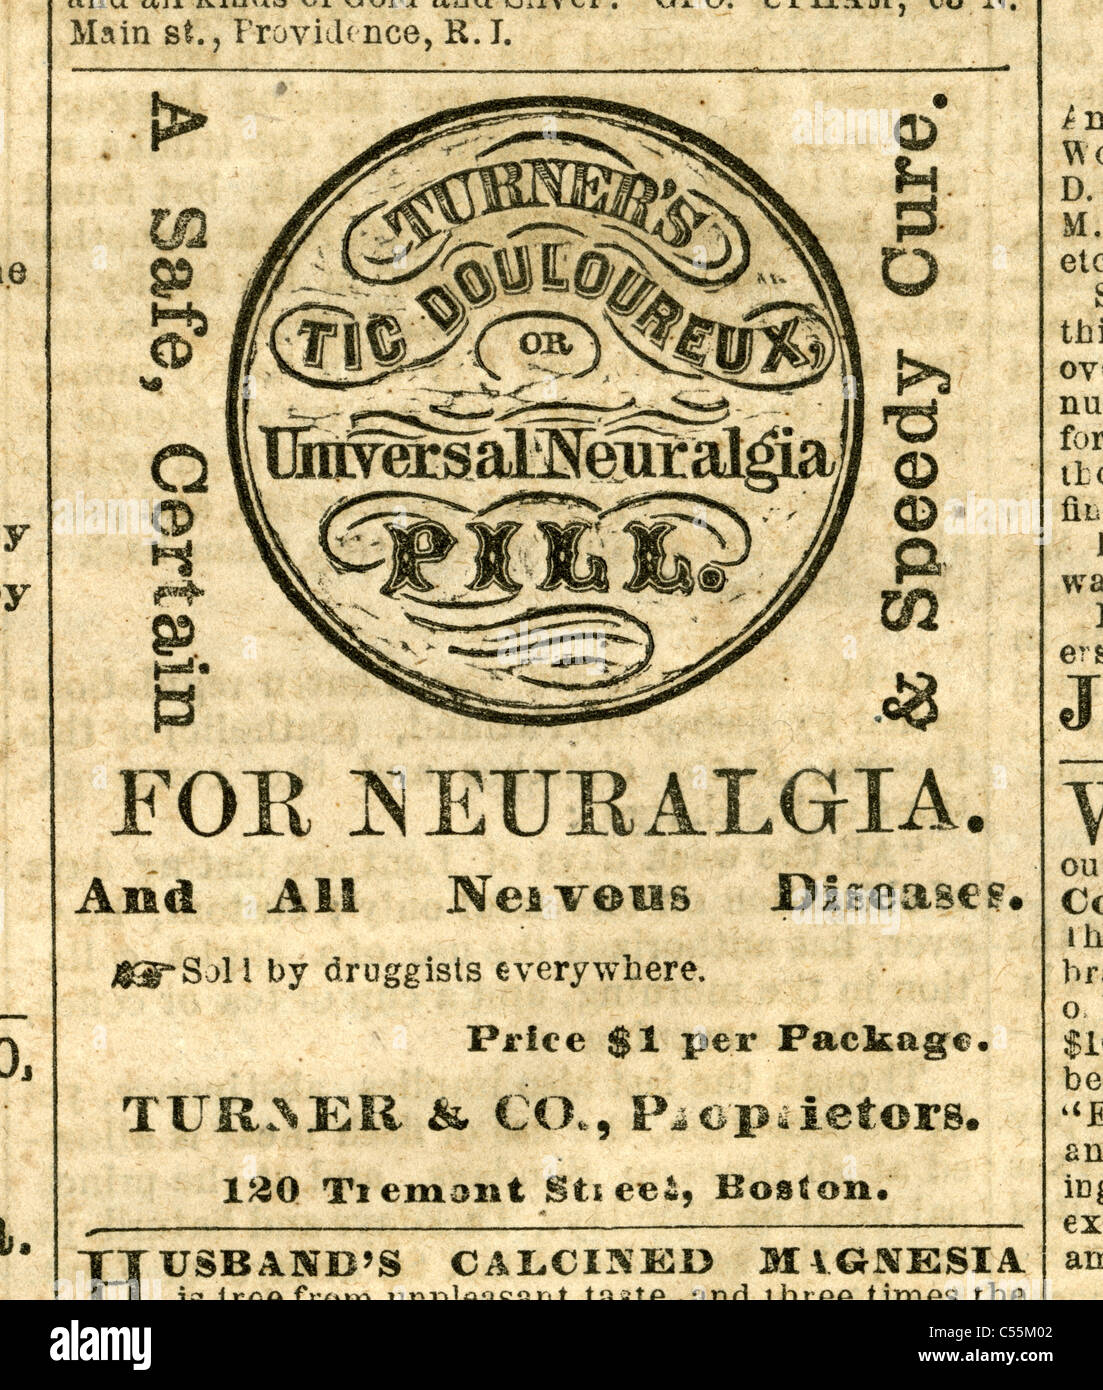 1867 gravure, Turner's névralgie universel pour toutes les pilules, les maladies nerveuses 120 Tremont Street, Boston, Massachusetts. Banque D'Images